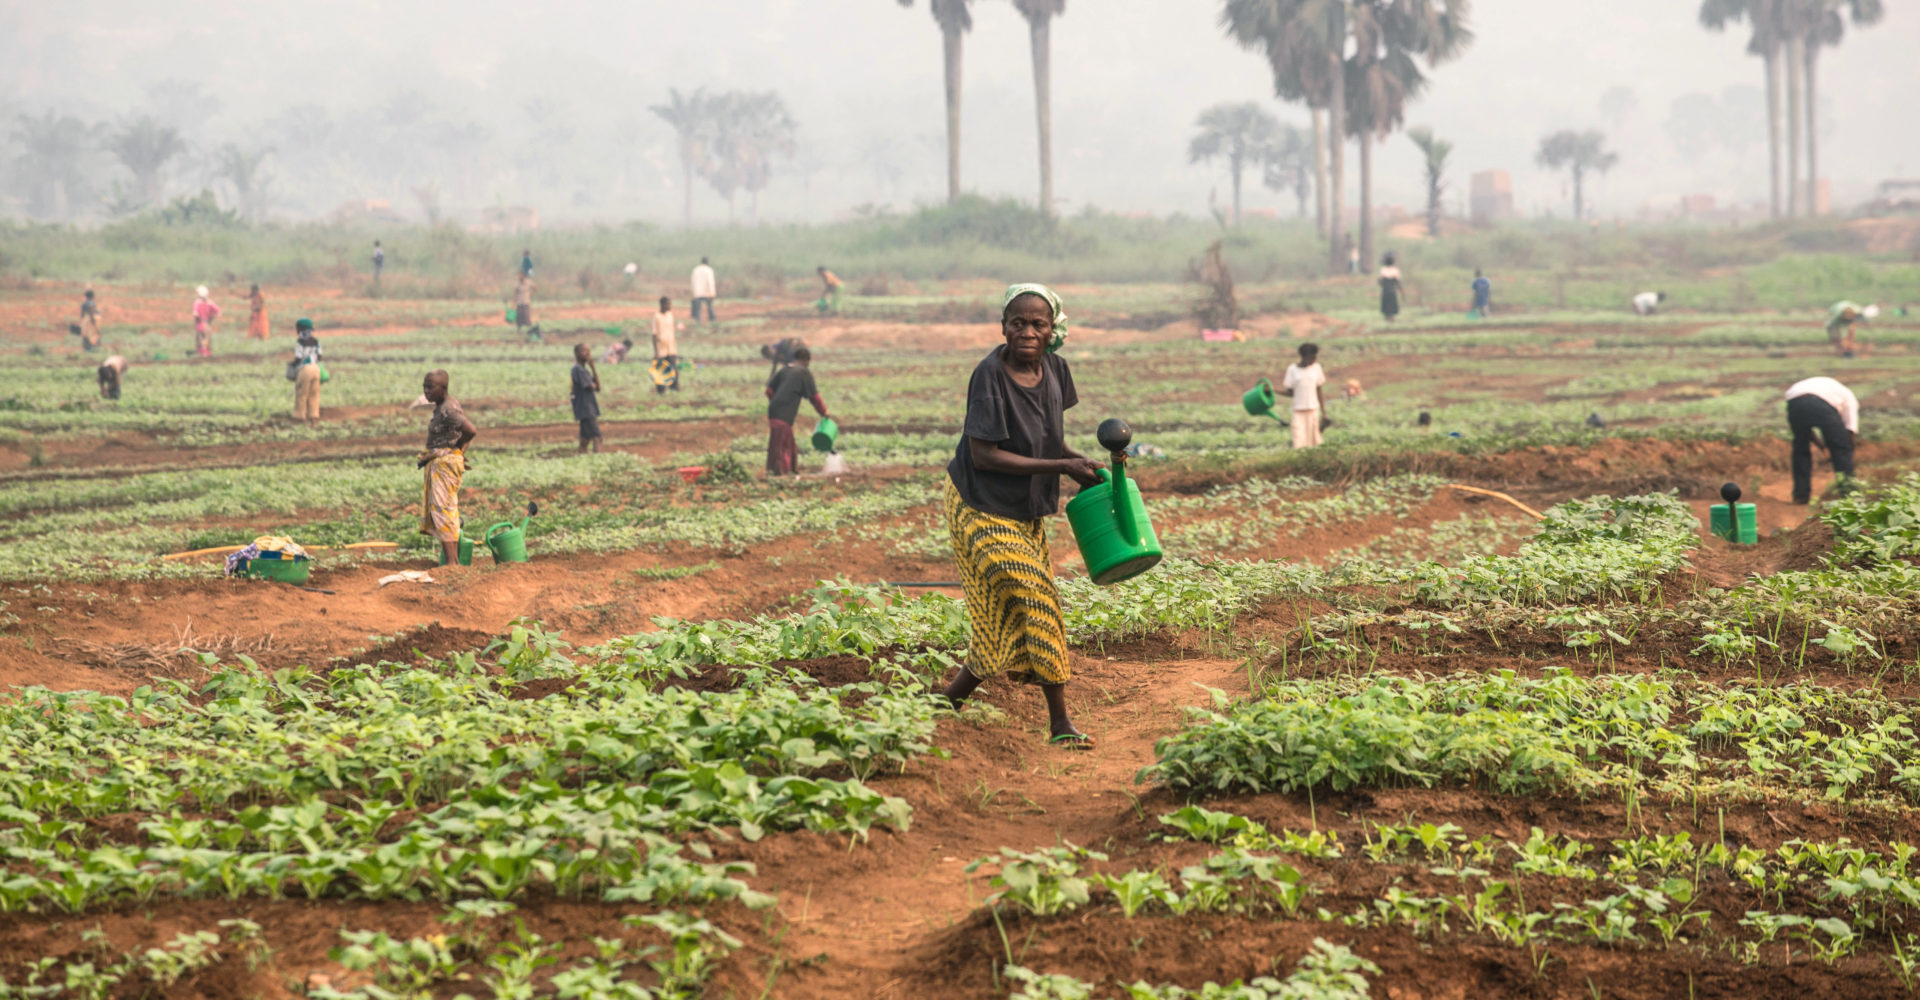 La FAO appelle à rapidement intensifier l’assistance humanitaire agricole en Afrique centrale 1